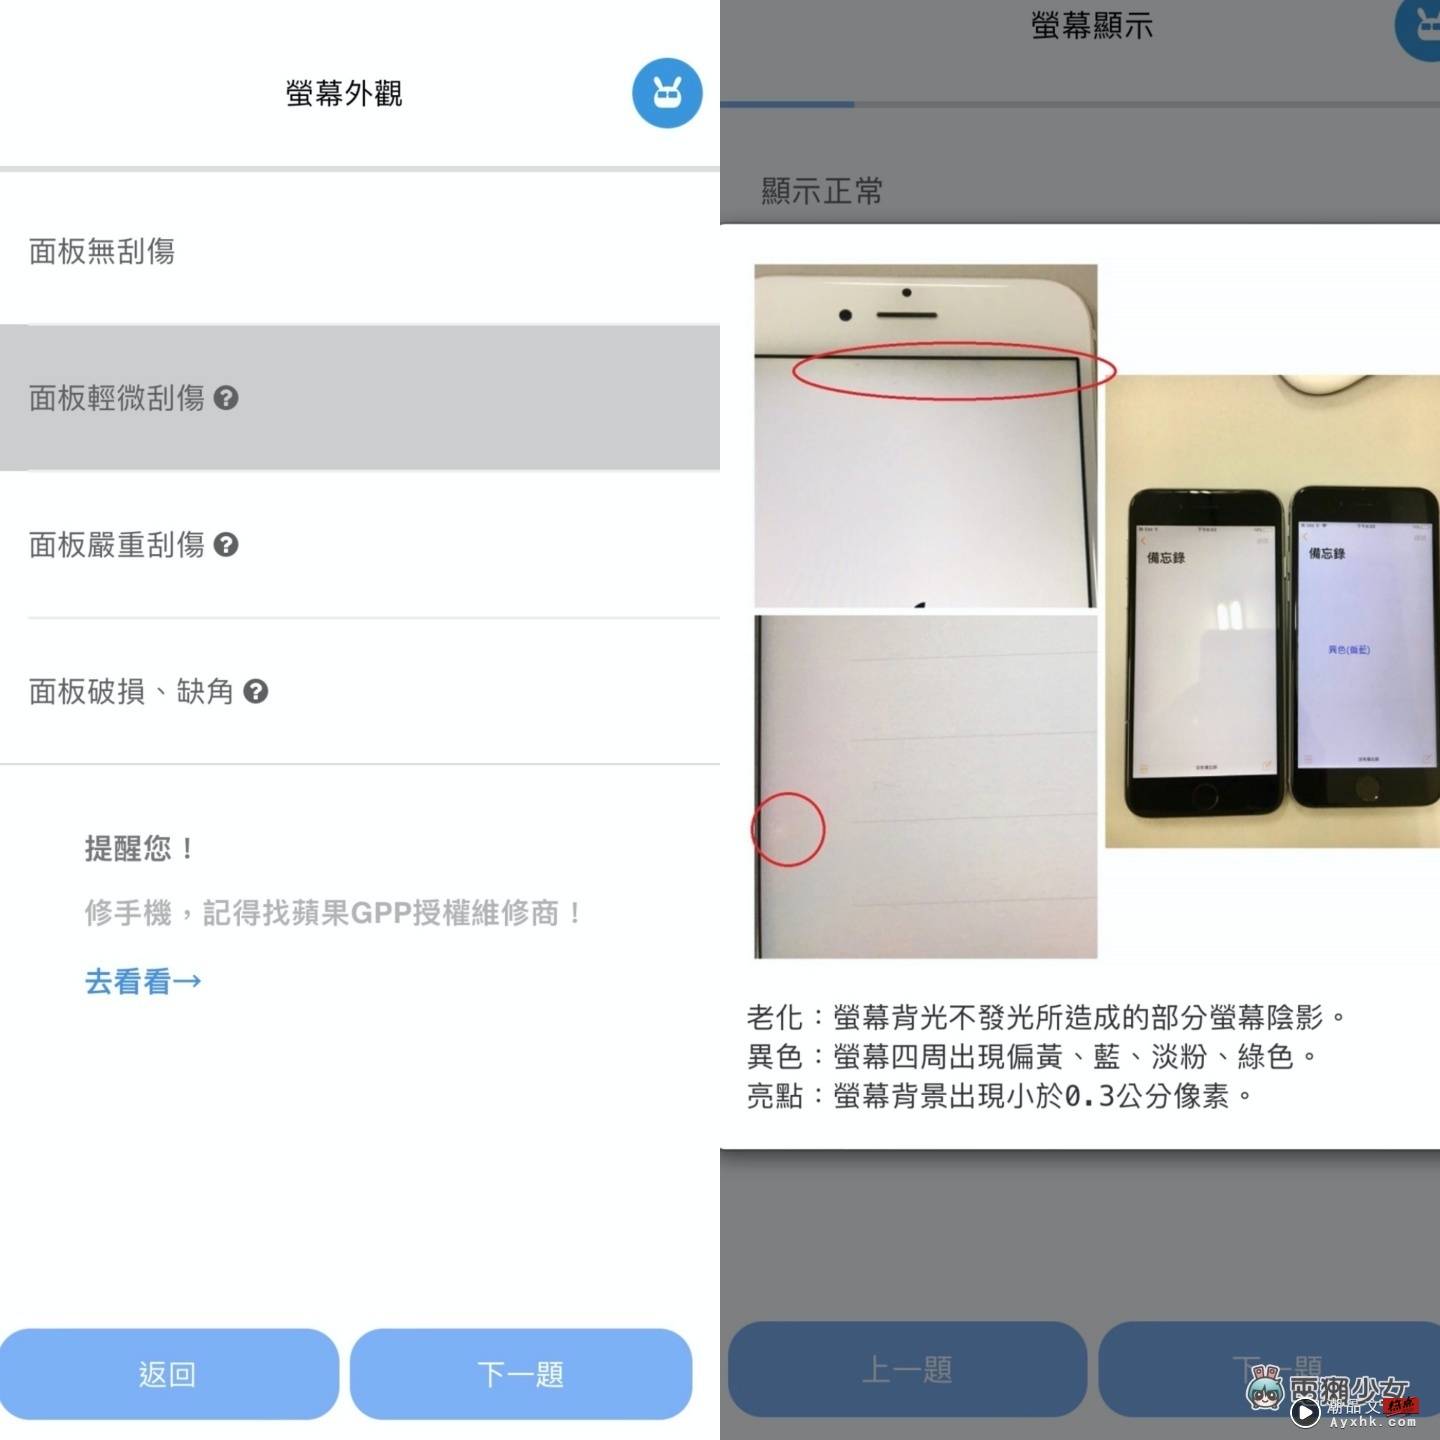 好想买 iPhone 14 Pro 但钱钱不够！靠卖旧机补贴怎样最划算？ 中国台湾二手通路回收价，‘ 手机医生 ’帮你一次比清楚！（Android／iOS） 数码科技 图3张